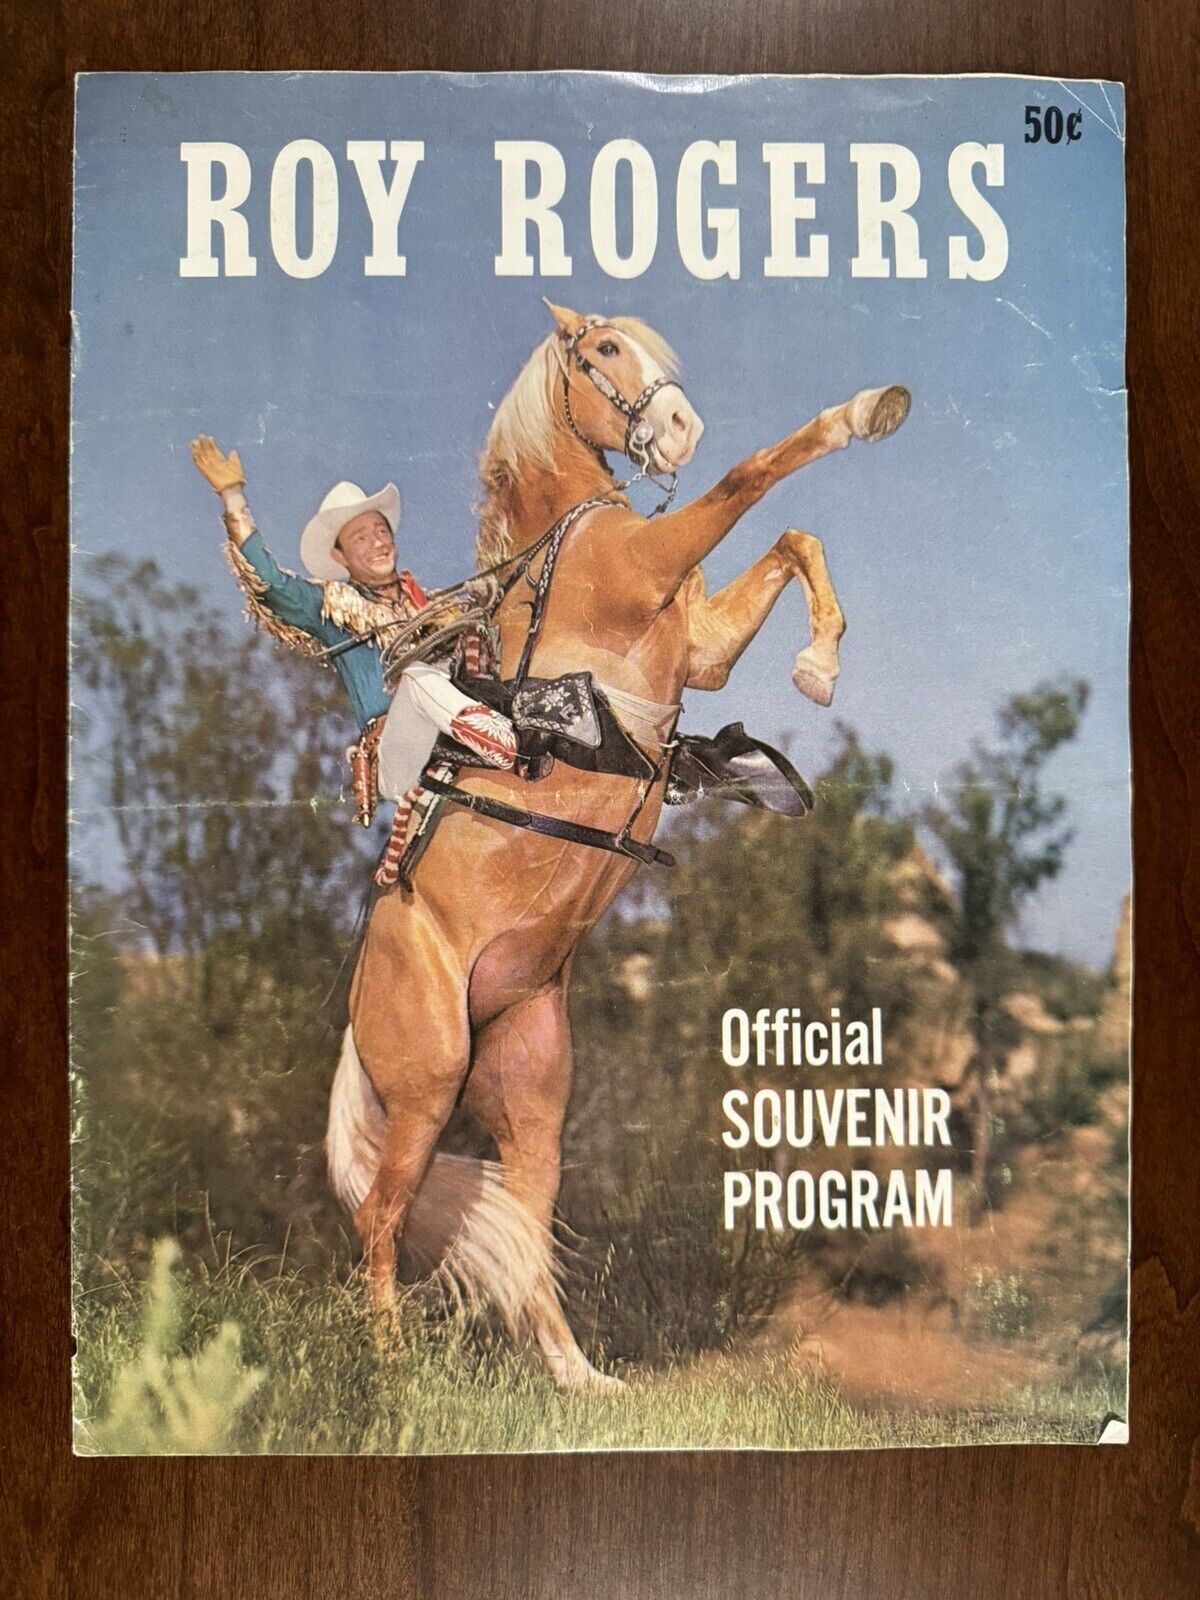 Roy Rogers Official Souvenir Program 1959 show Dale Evans cowboy photos flyer